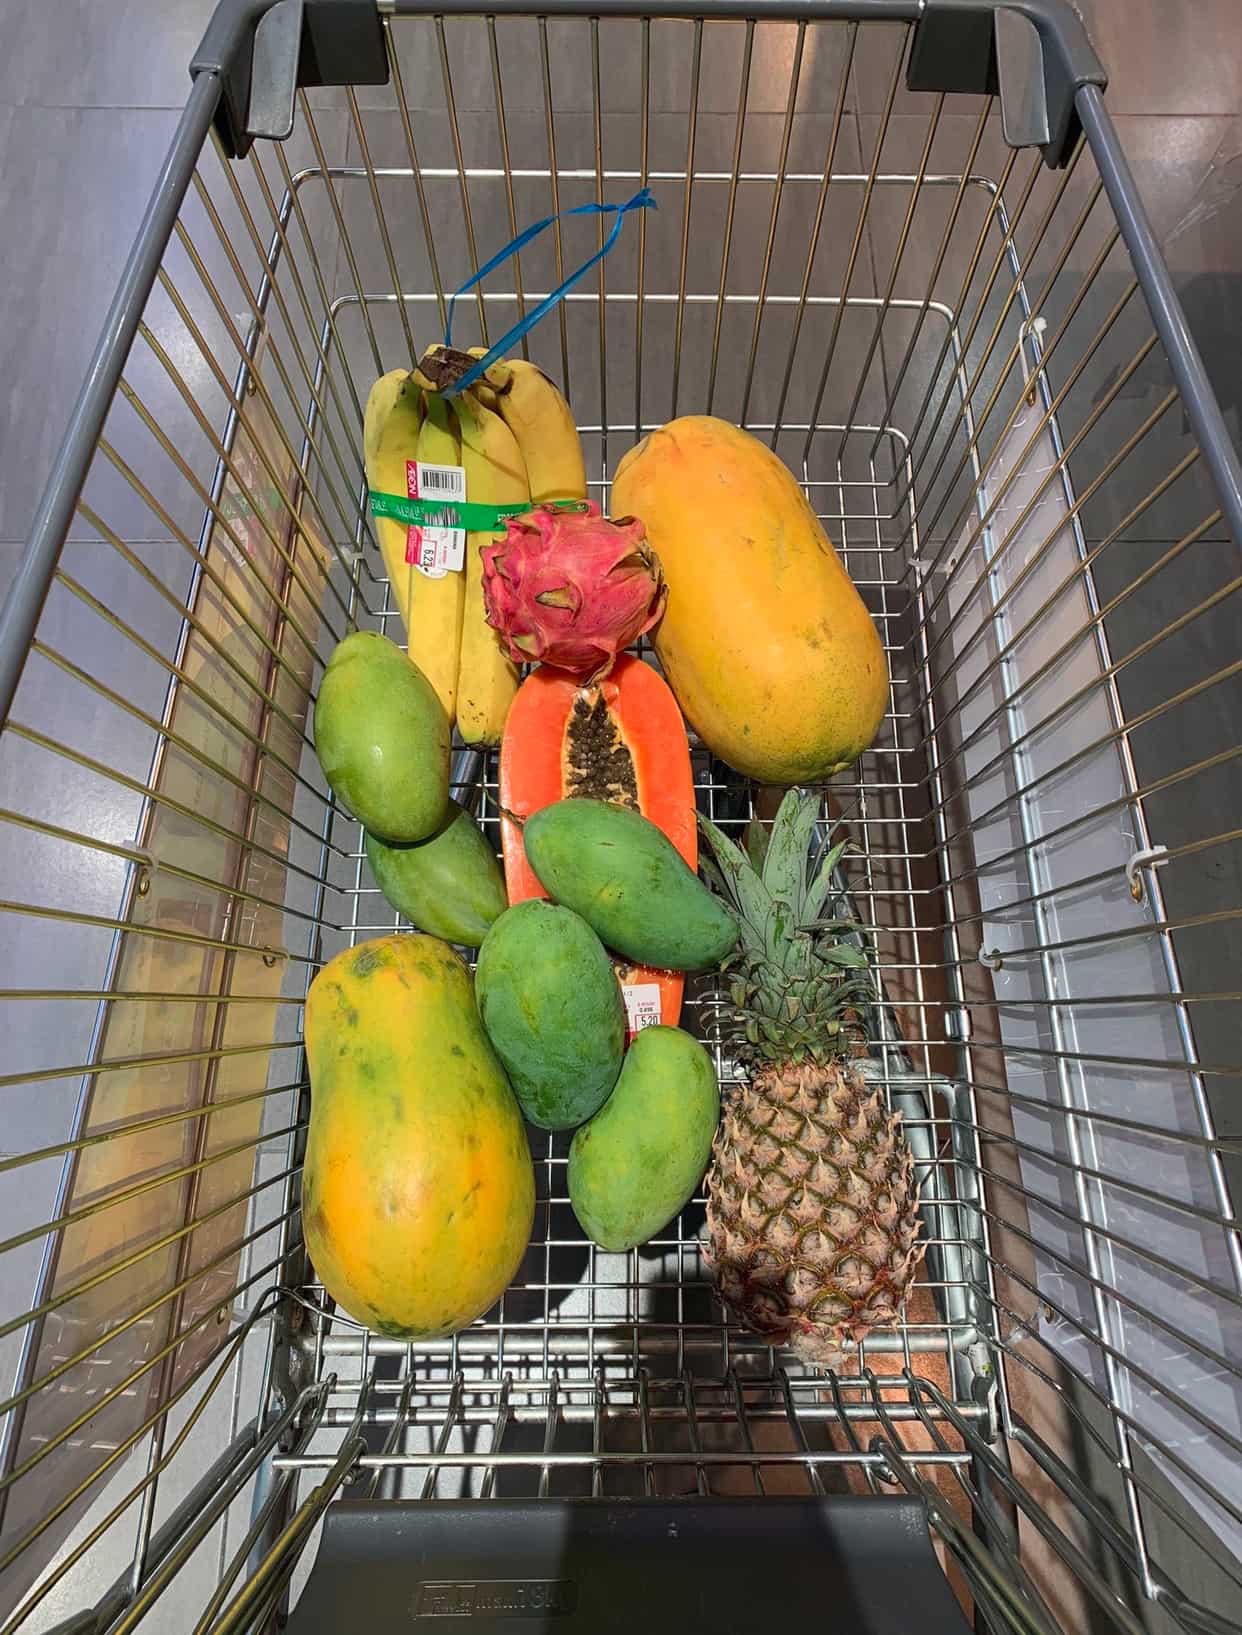 Тележка в супермаркете, в которой лежат экзотические тропические фрукты.